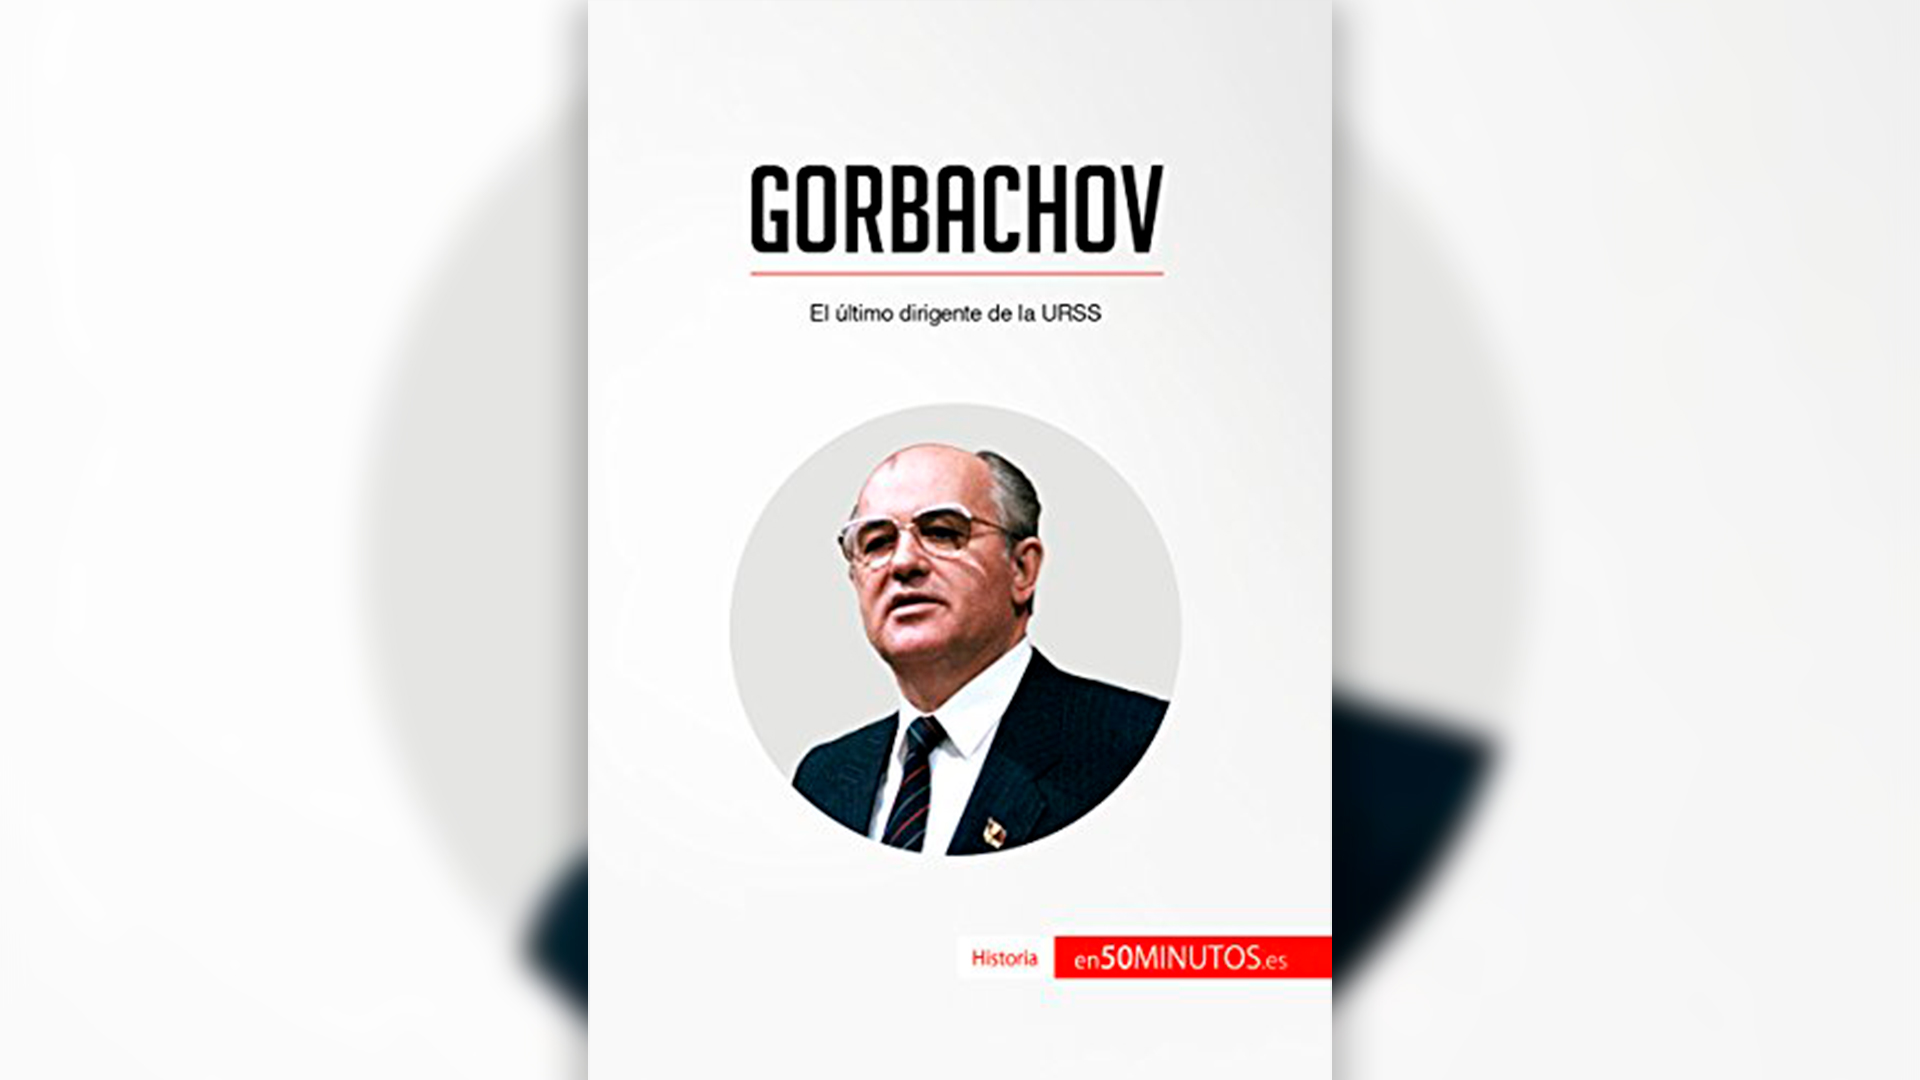 “Gorbachov. El último dirigente de la URSS”.